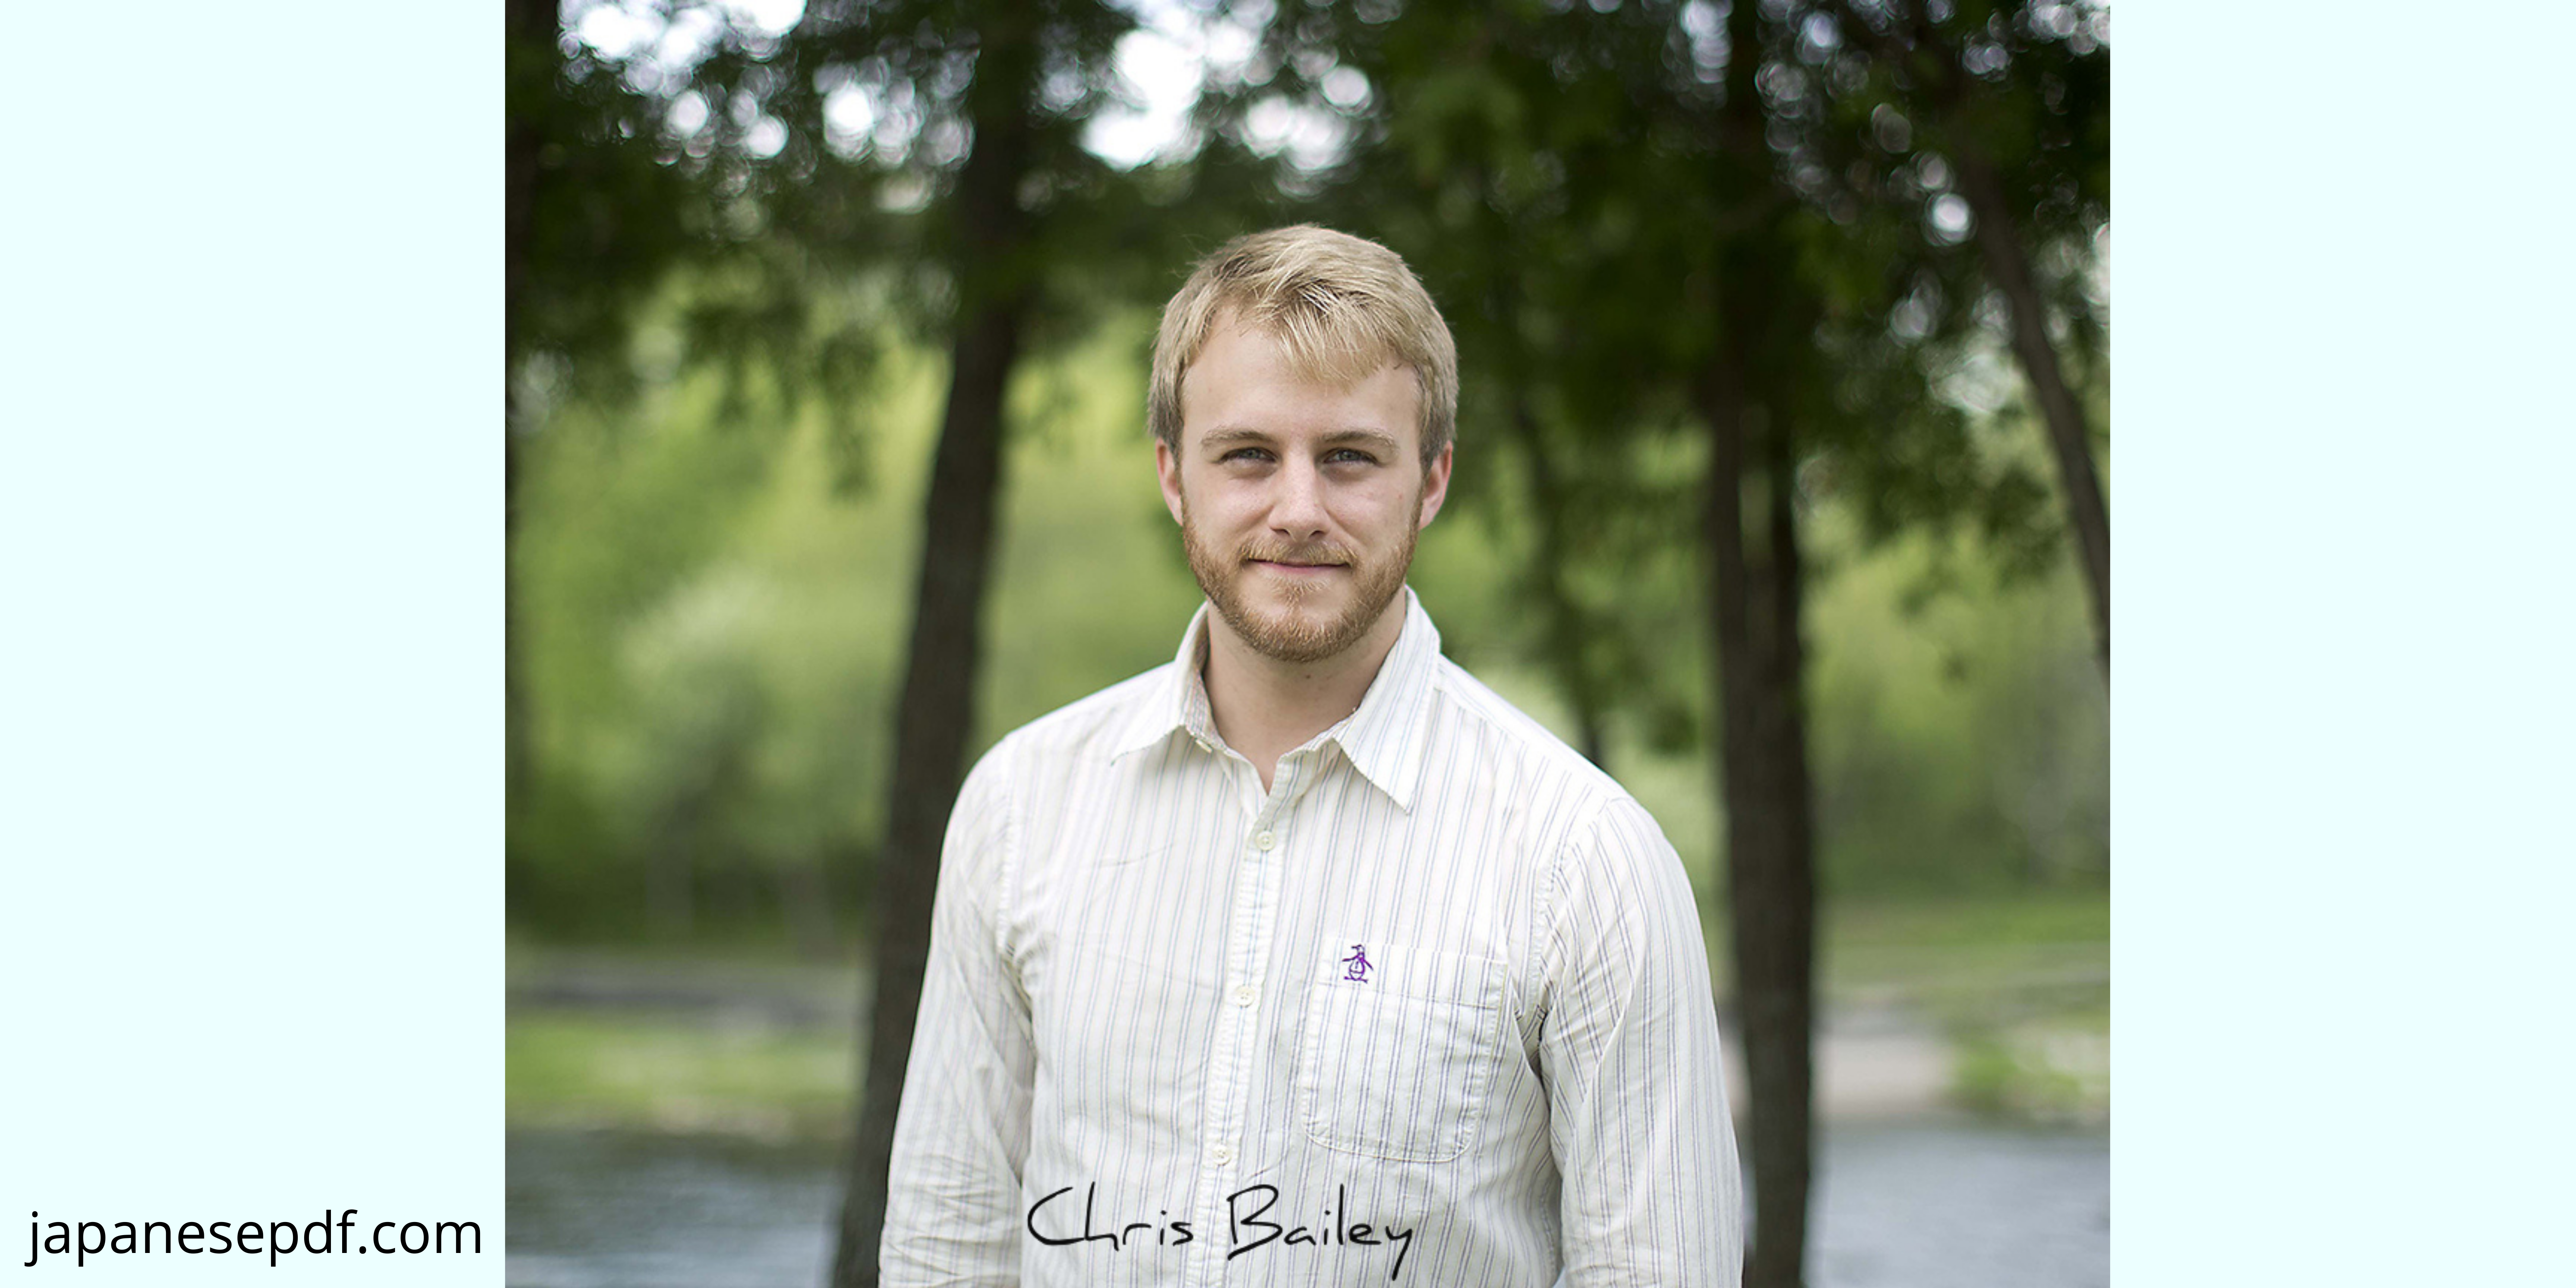 Author Chris Bailey